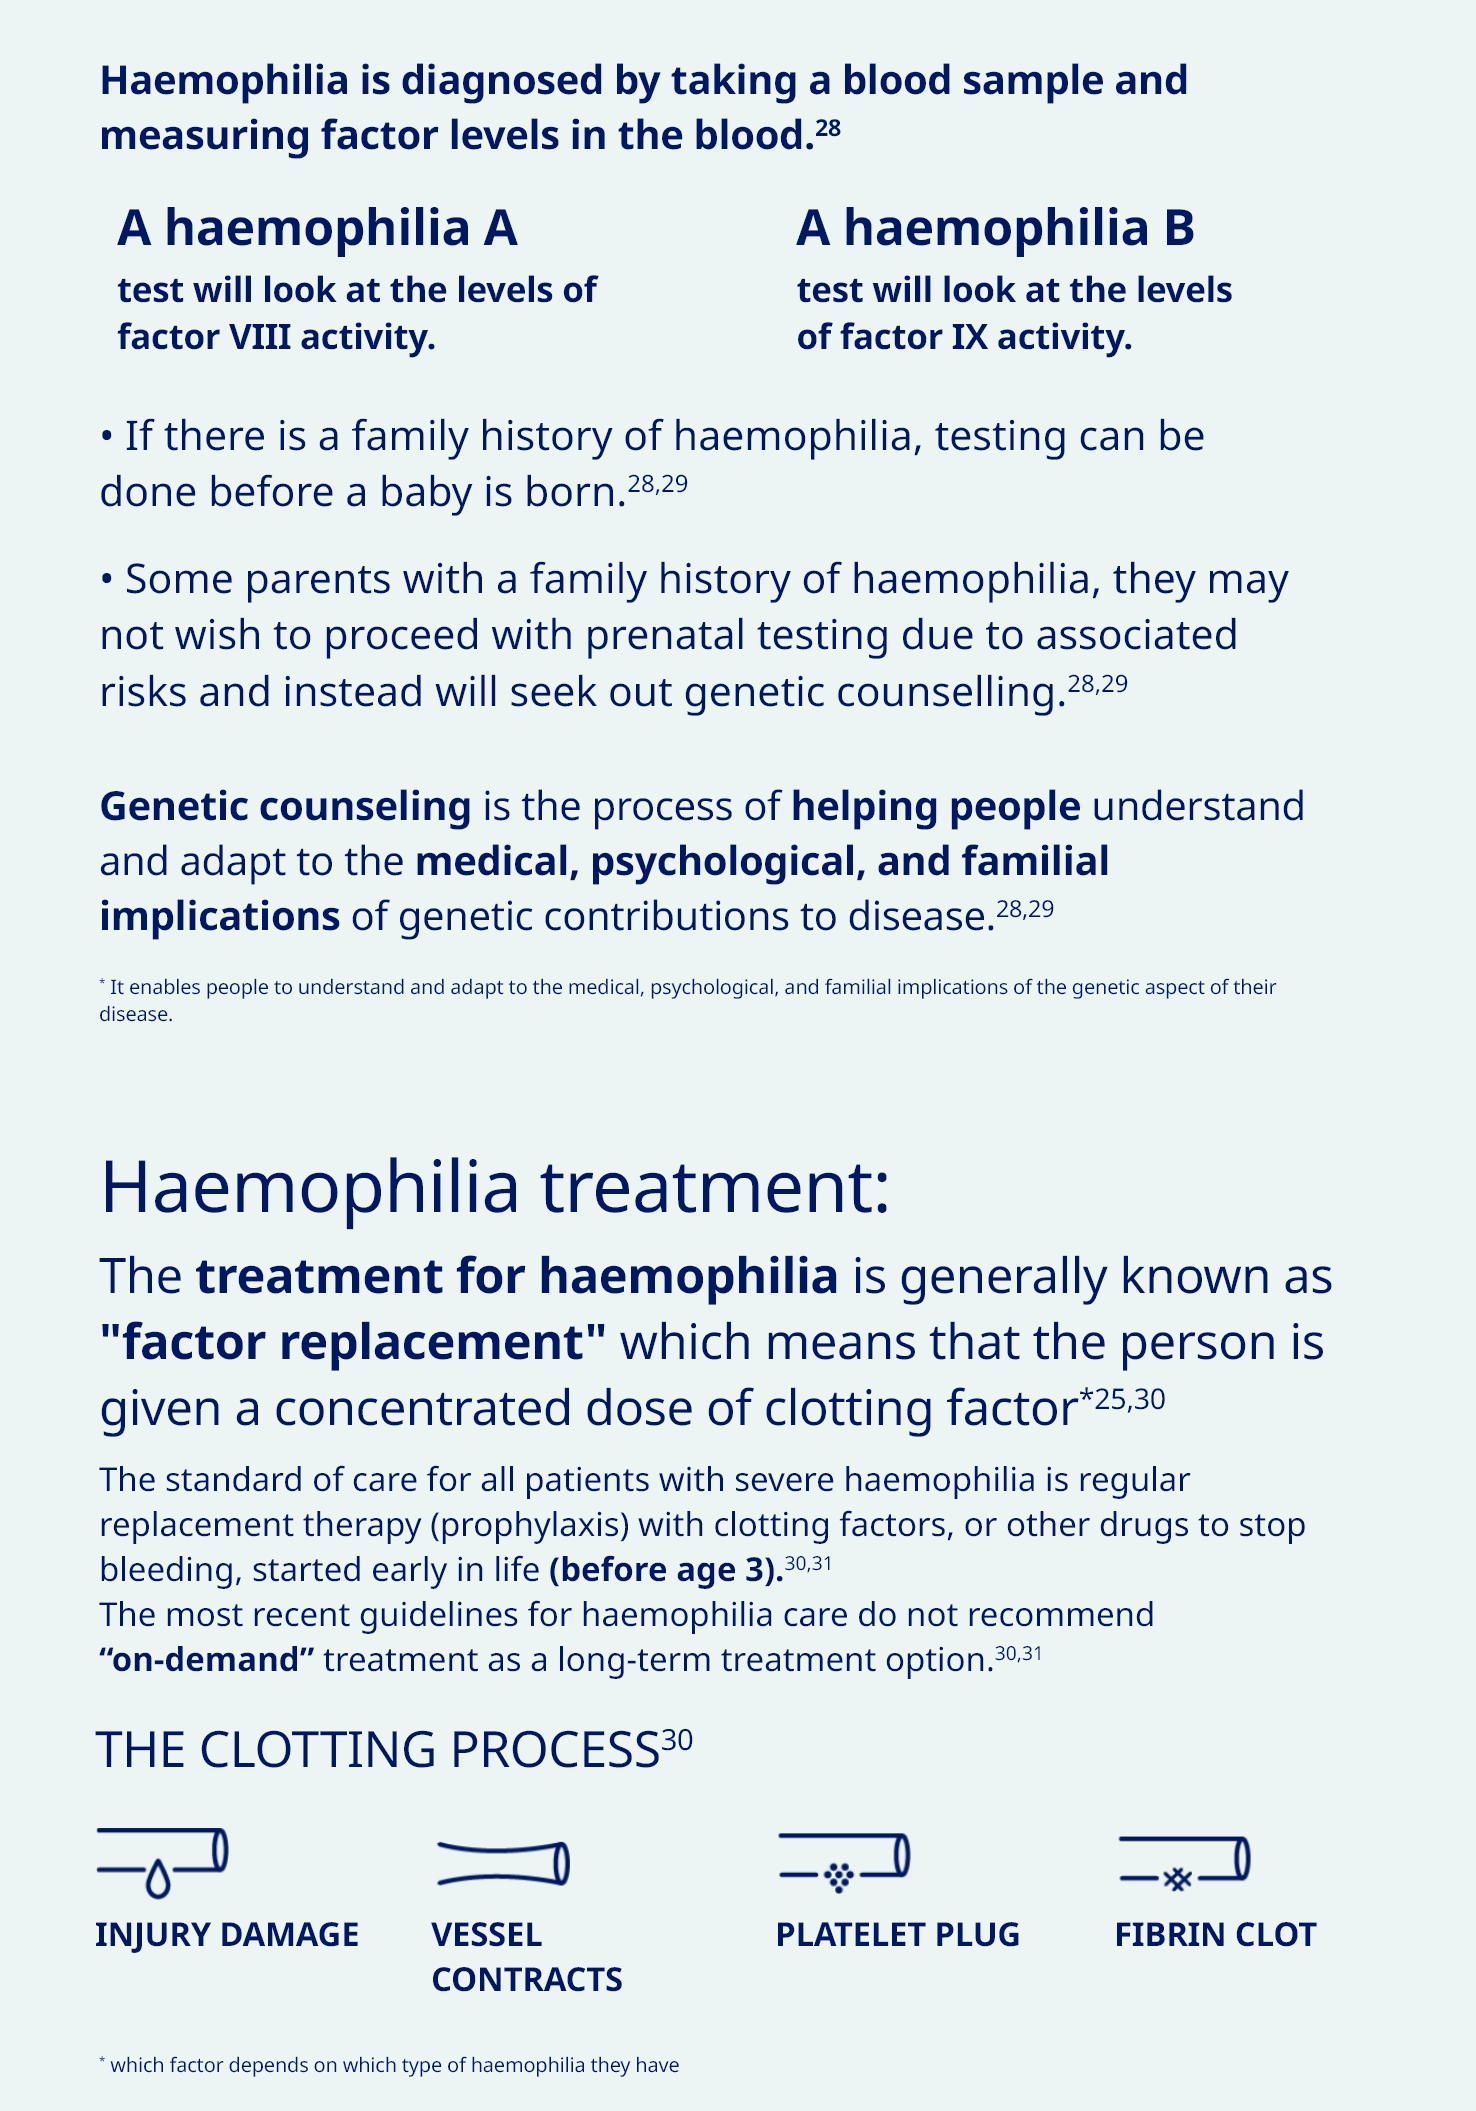 Haemophilia Diagnoised